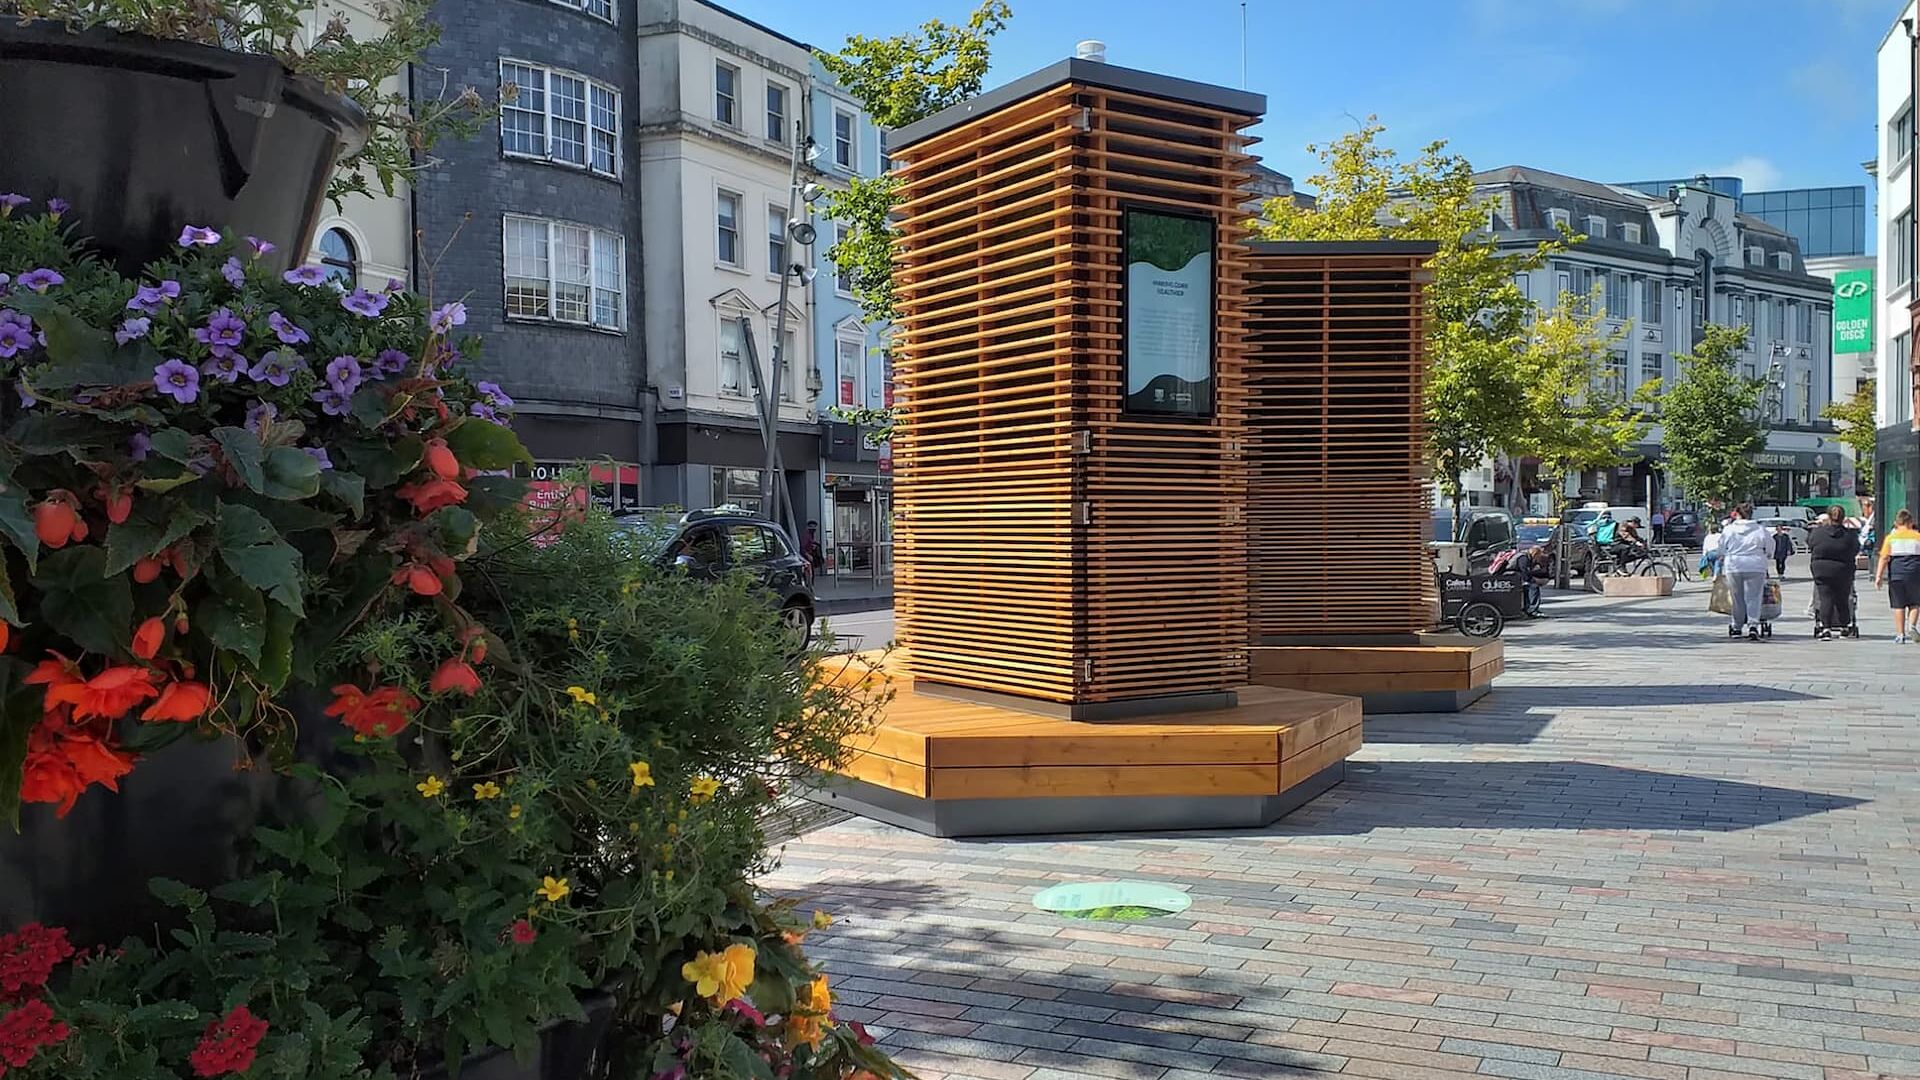 ურბანული ავეჯი, რომელიც ებრძვის დაბინძურებას: ქალაქის ხეების ინფრასტრუქტურა კორკში, ირლანდია (ფოტო: Green City Solutions)